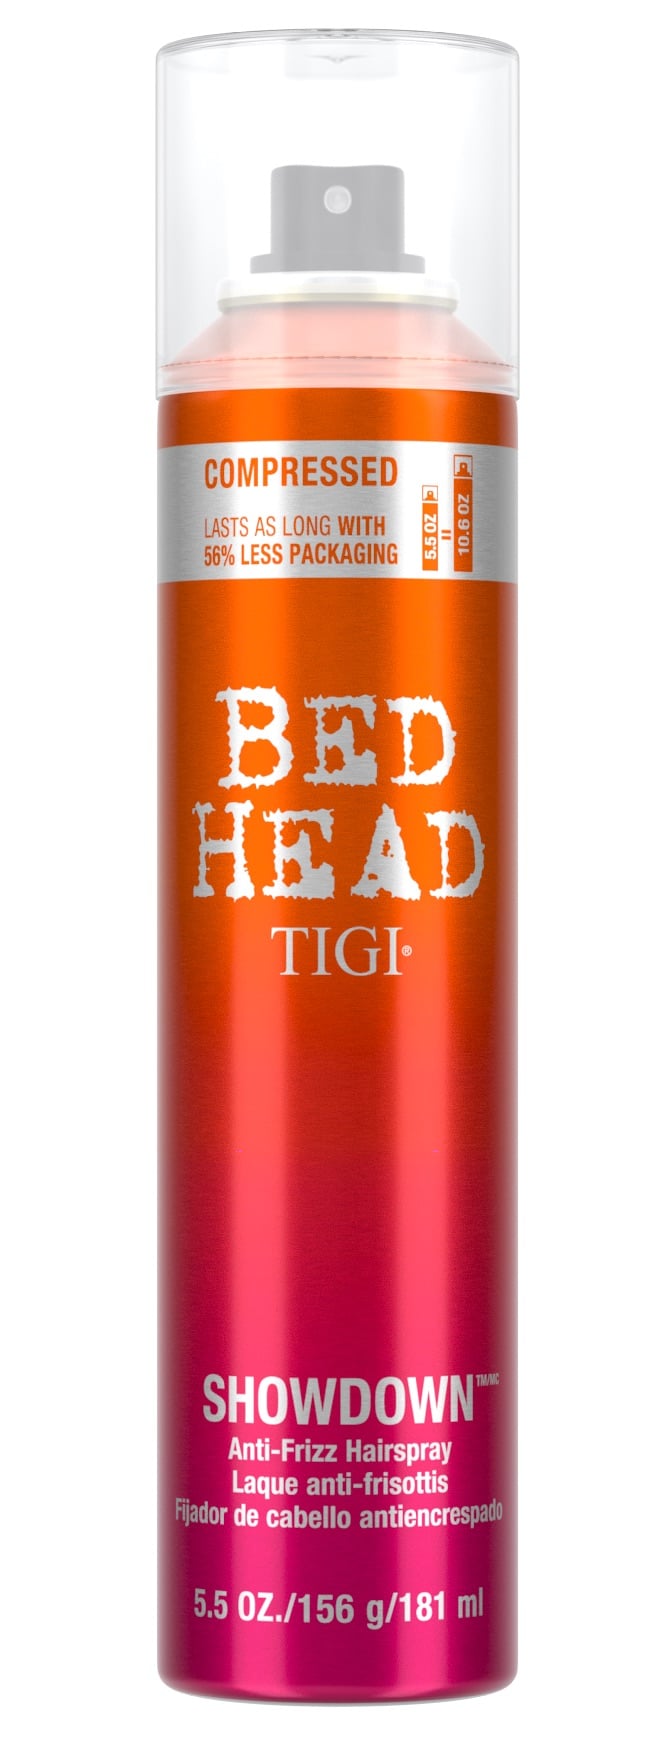 Bed Head Showdown Anti-Frizz Hairspray